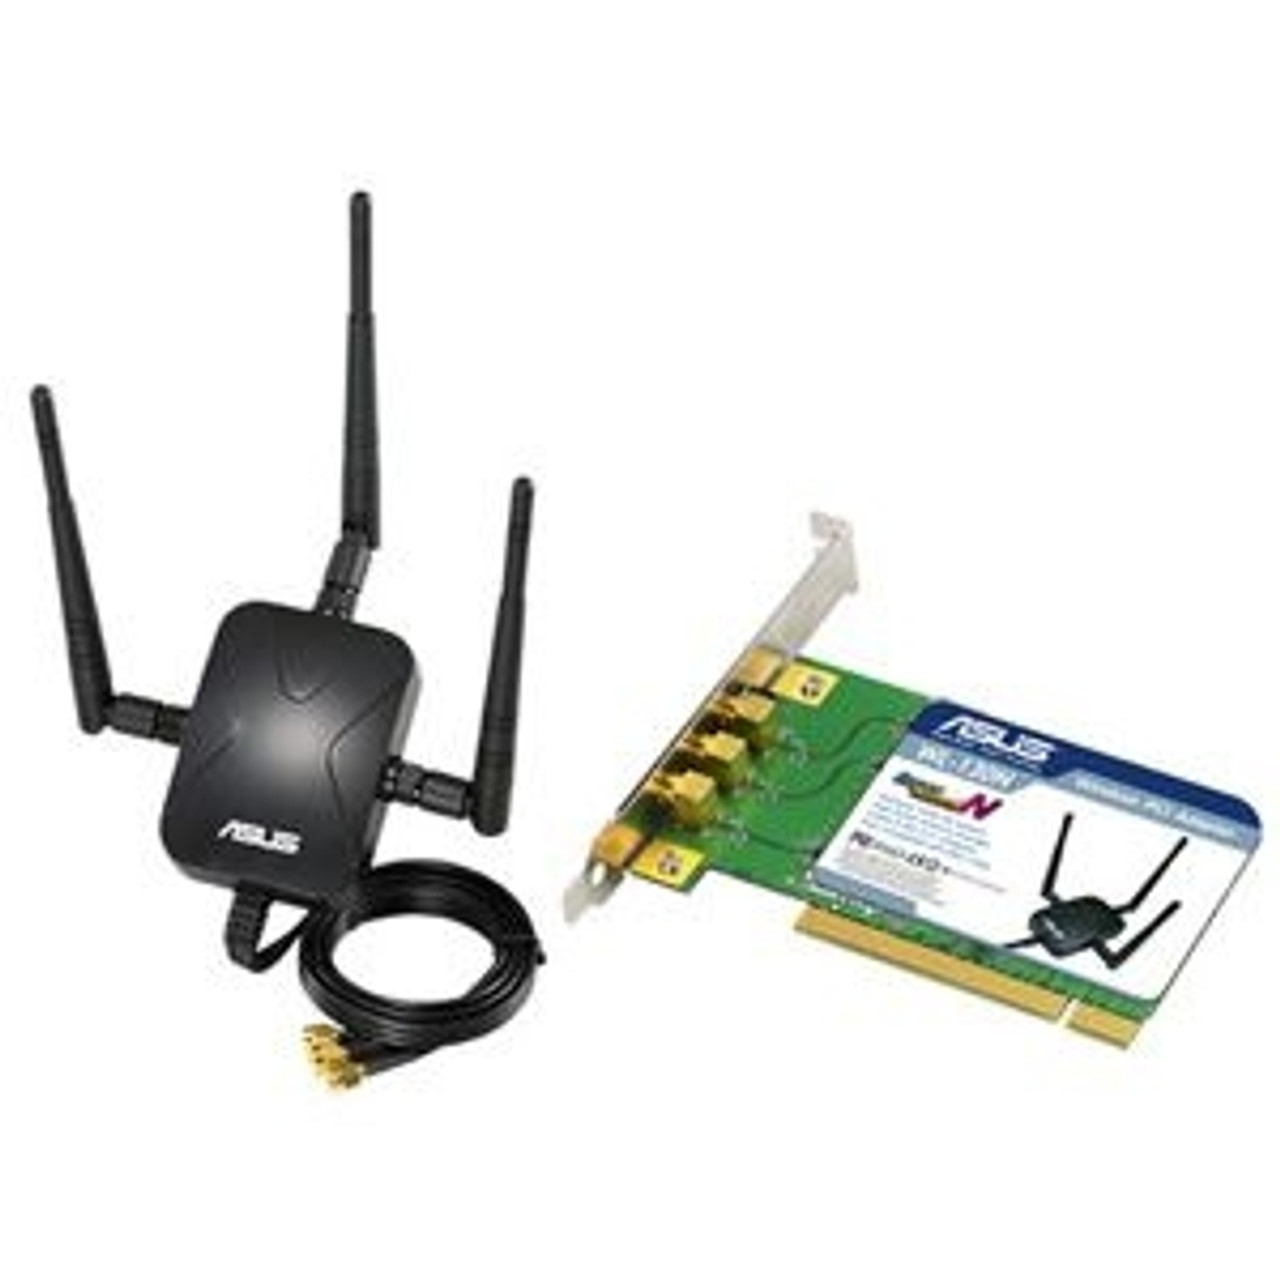 ASUSWL-130N ASUS IEEE 802.11n Draft PCI Wireless Network Adapter